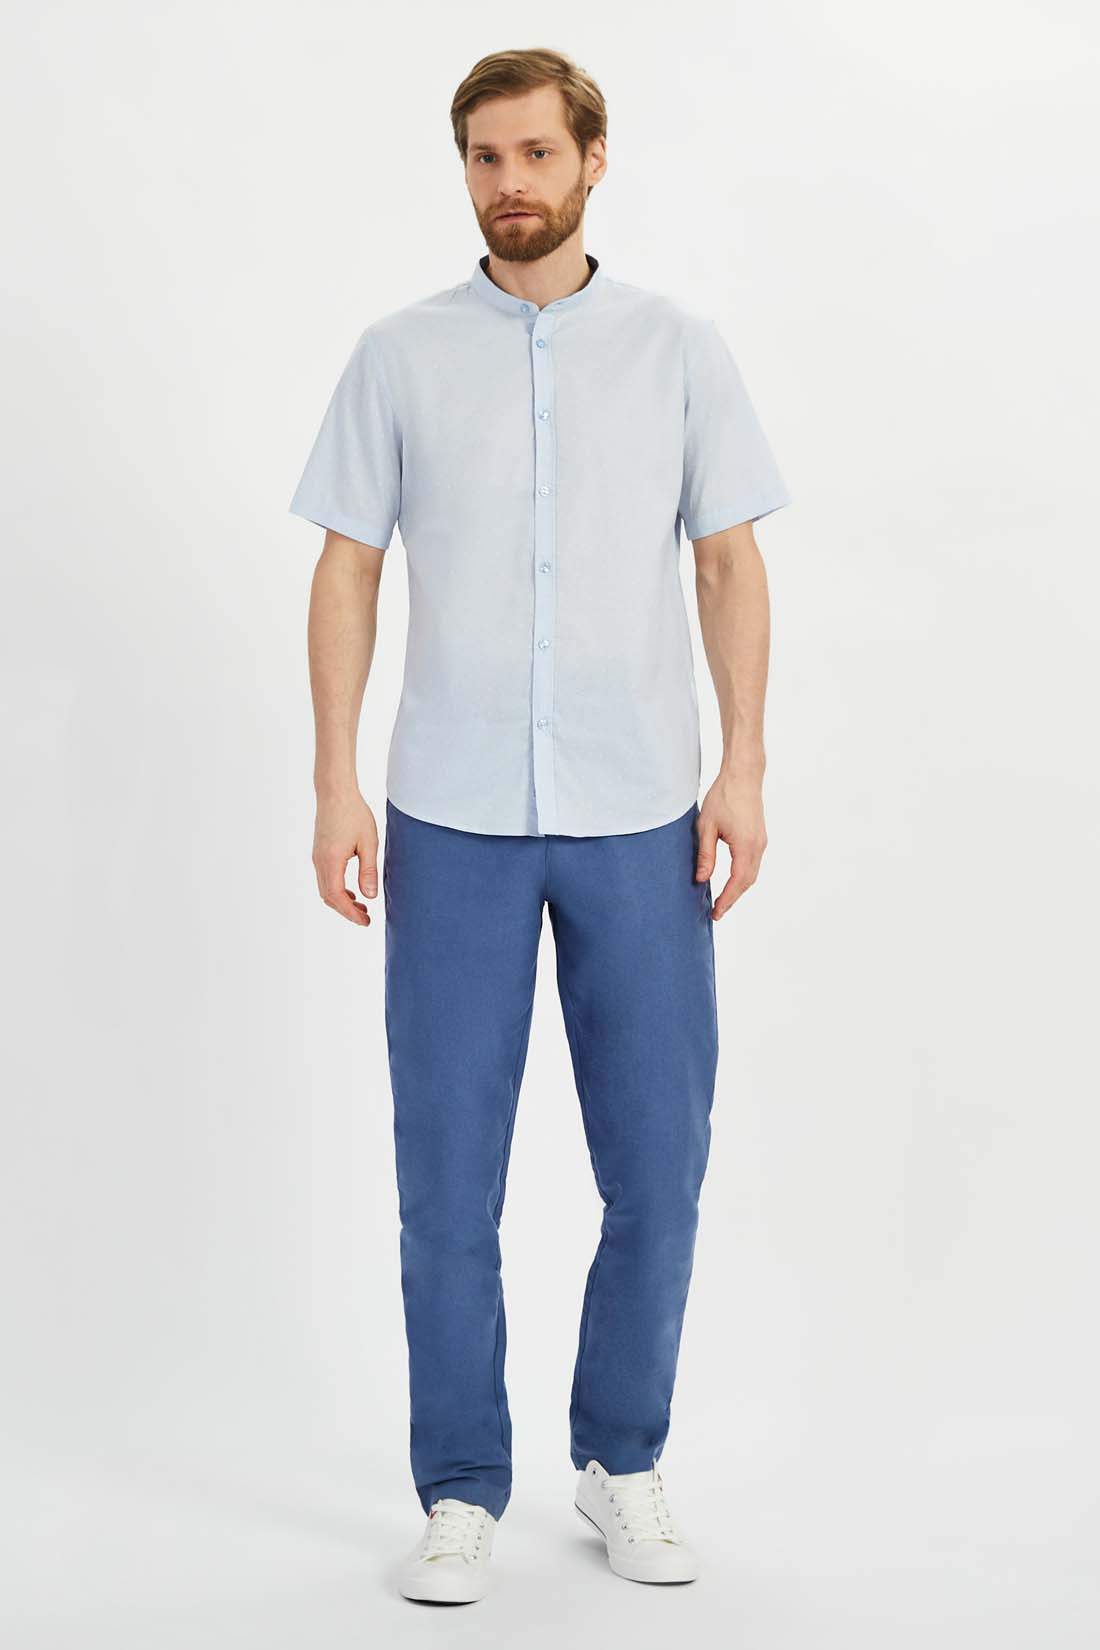 Рубашка мужская Baon B6822014 голубая 3XL